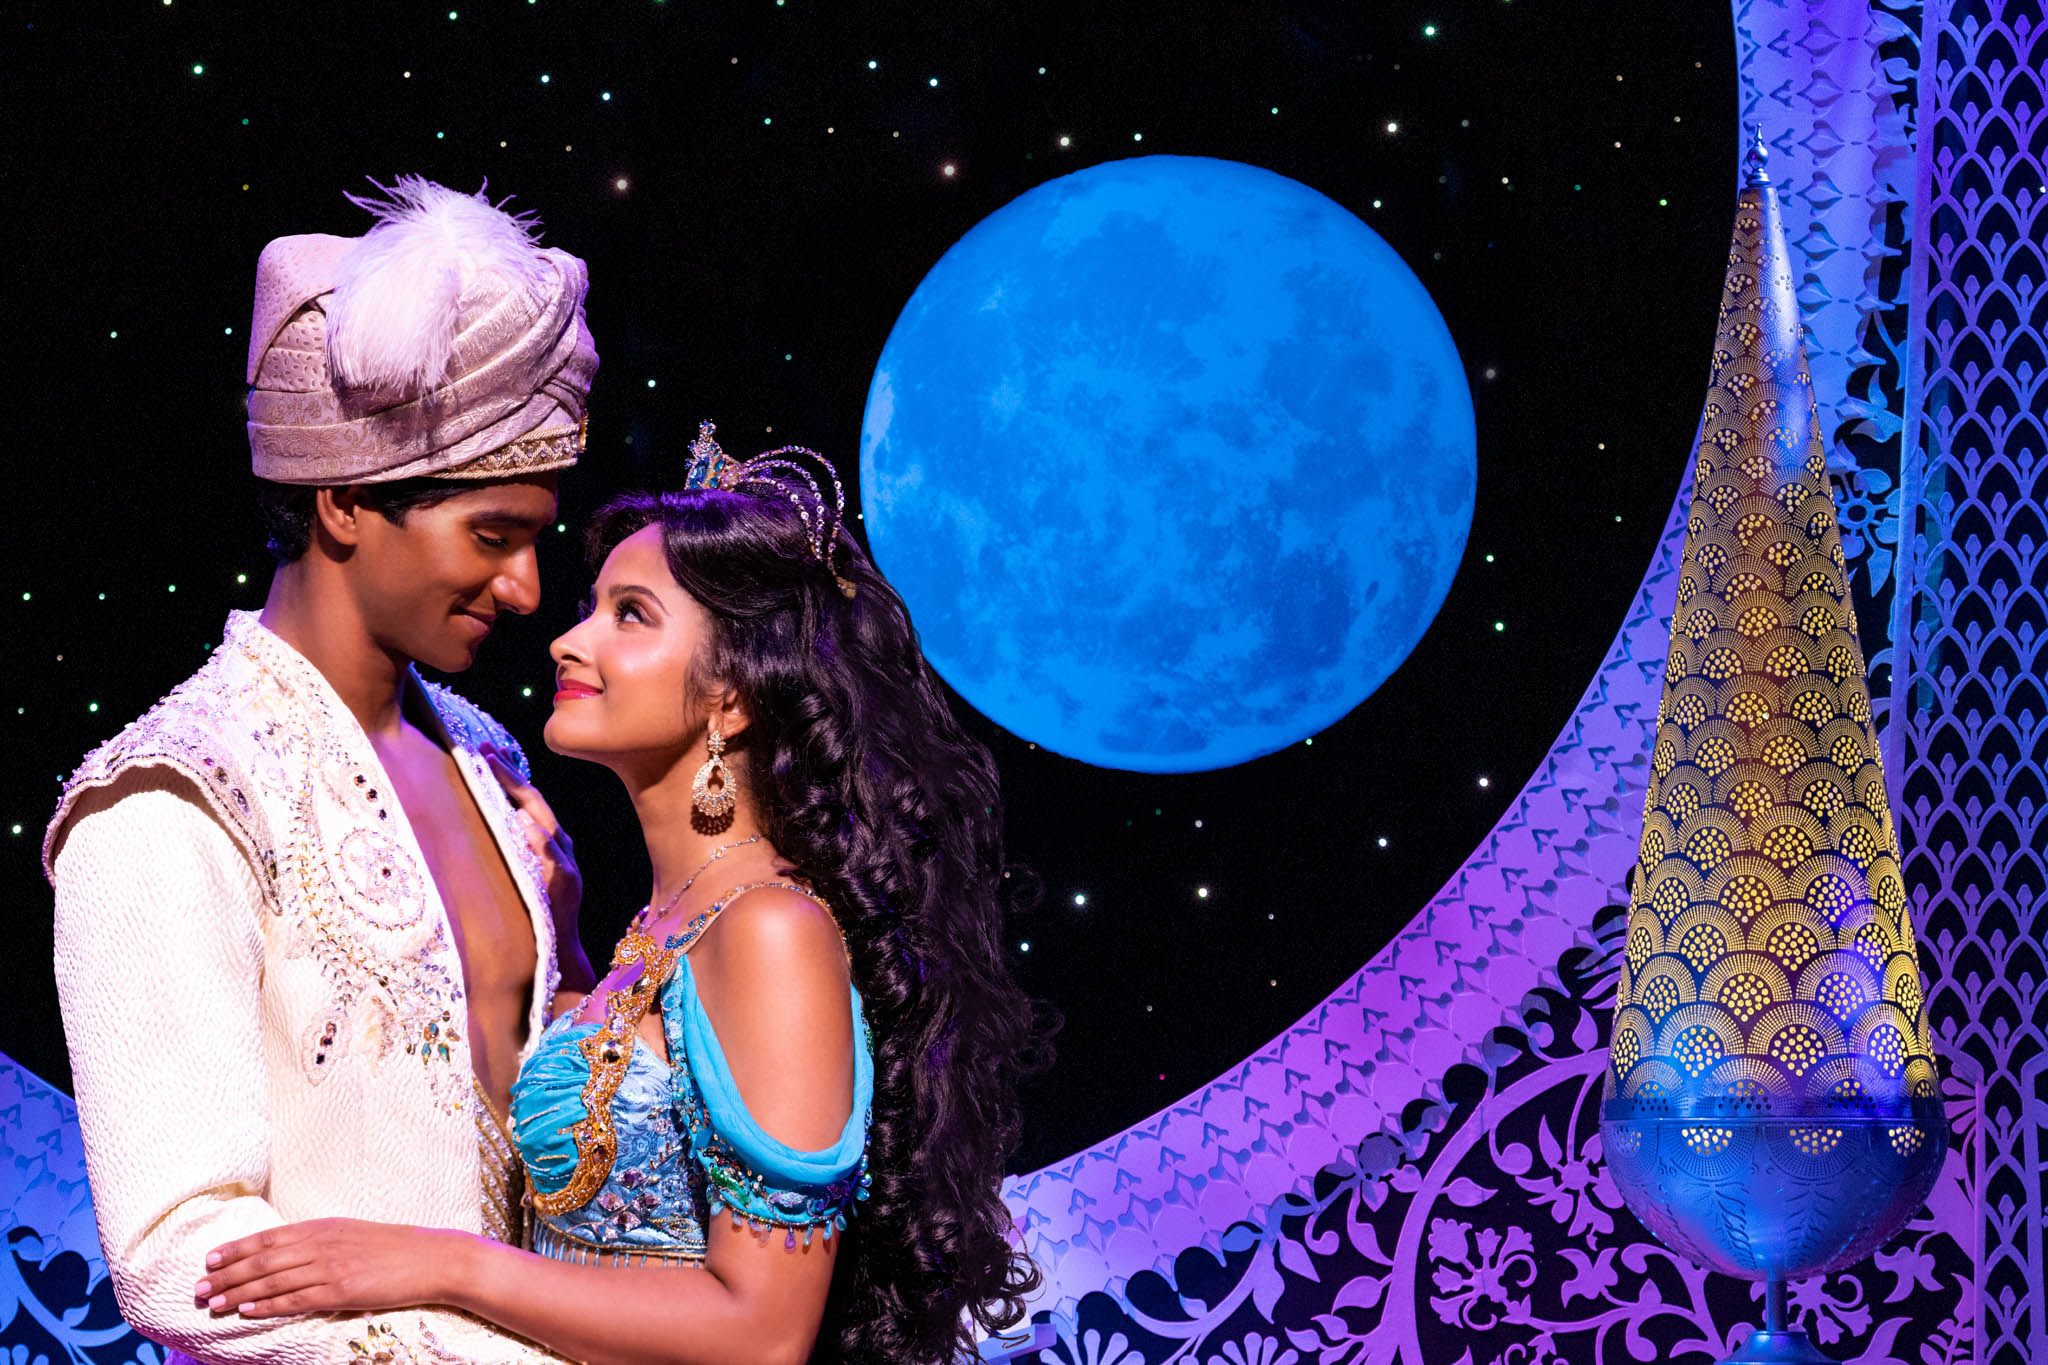 迪士尼的Aladdin 推出了全新创作   北美巡回演出 让新观众得以体验这个热门百老汇音乐剧 